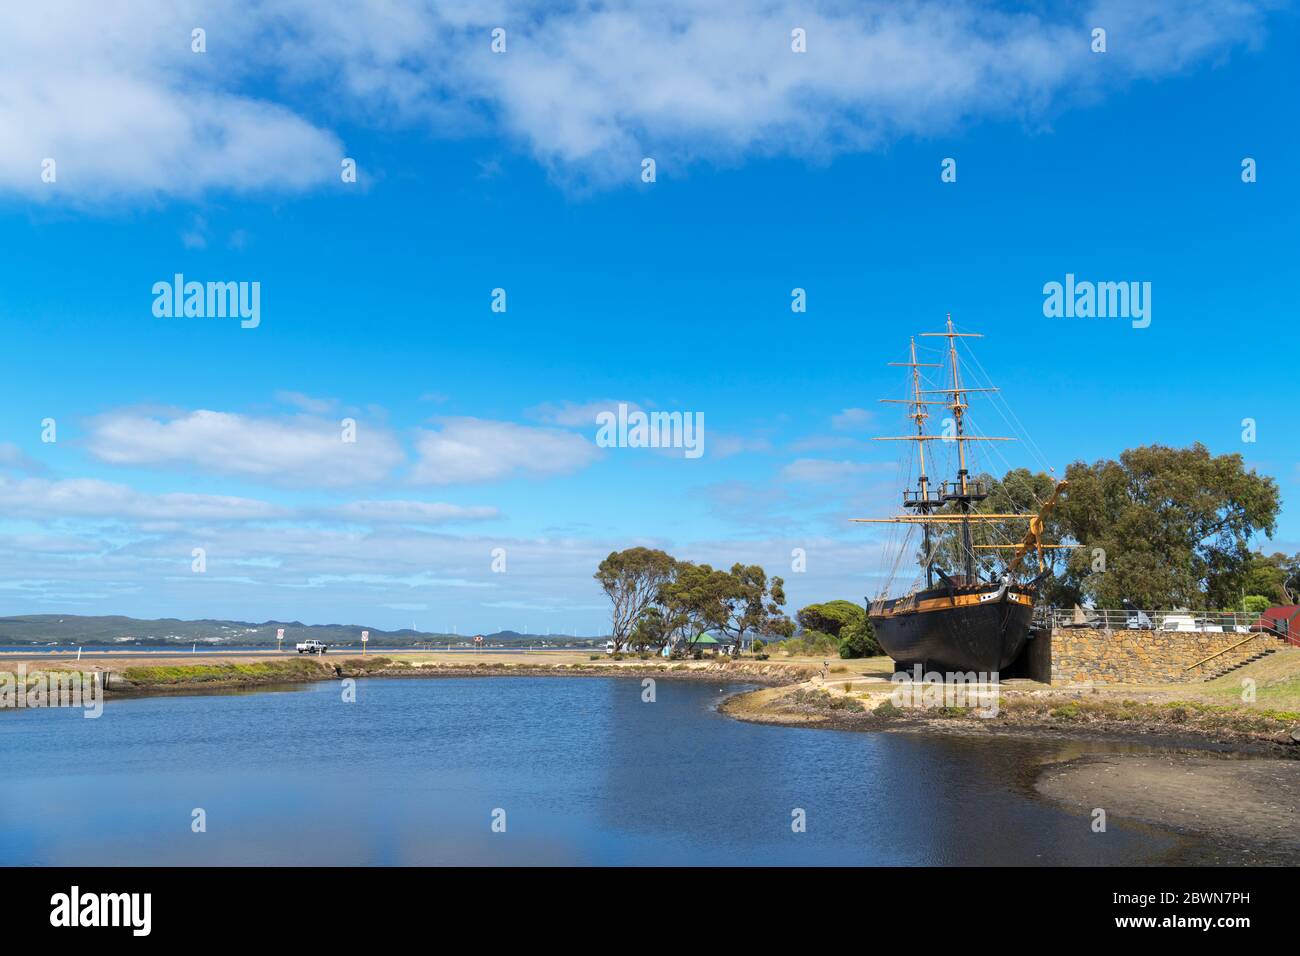 Réplique de la brig 'Amity', qui a amené les premiers Européens en Australie occidentale en 1826, Albany, Australie occidentale, Australie Banque D'Images